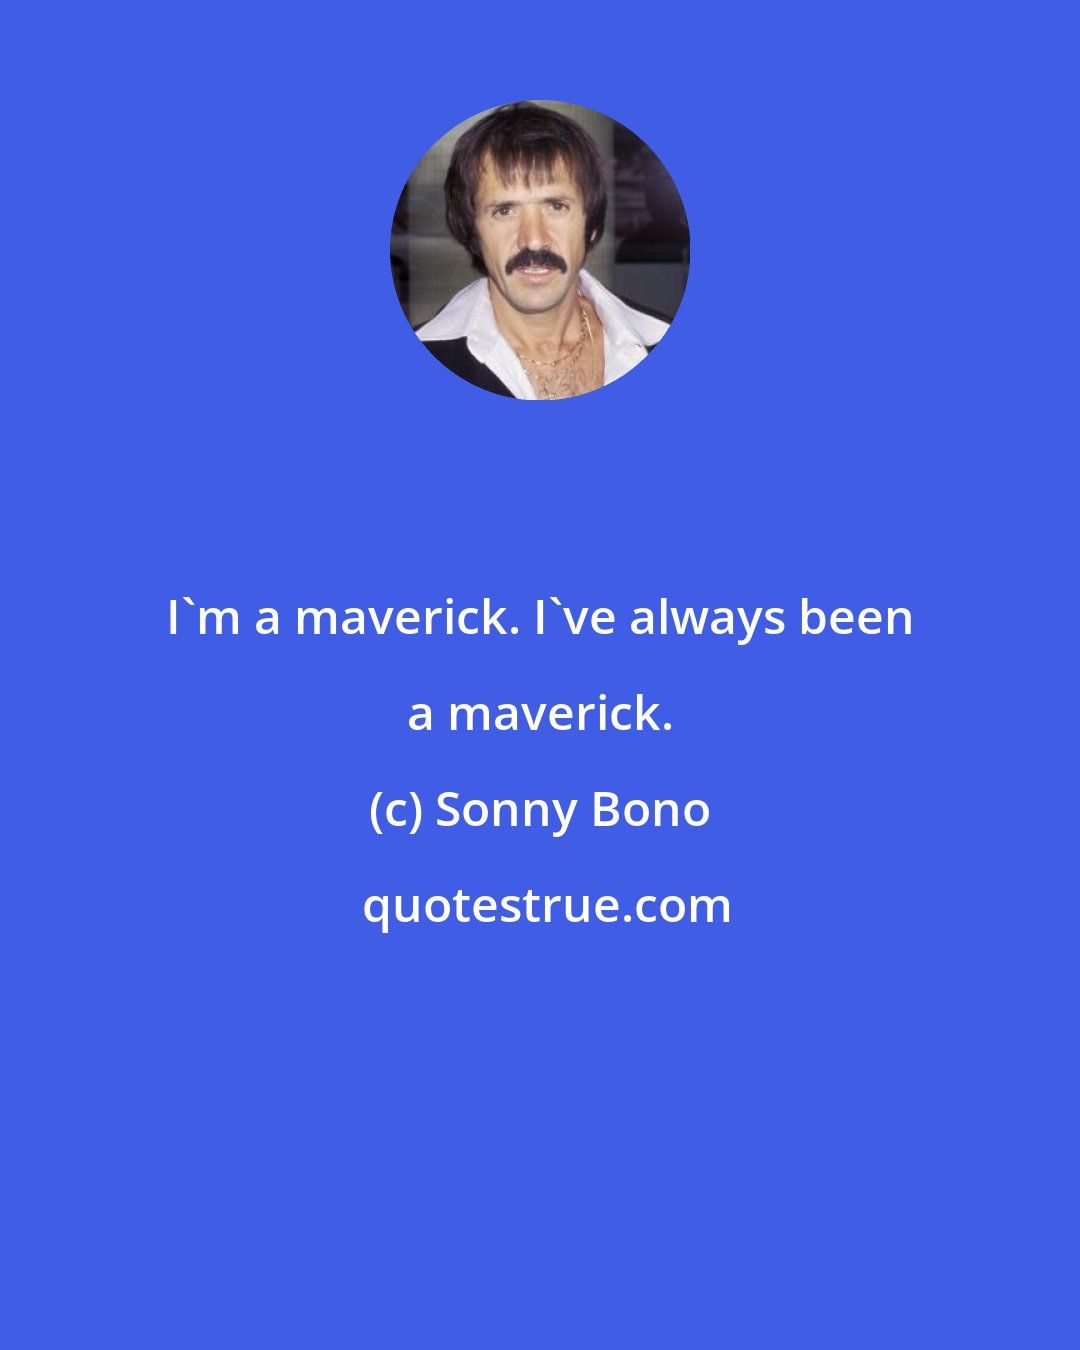 Sonny Bono: I'm a maverick. I've always been a maverick.